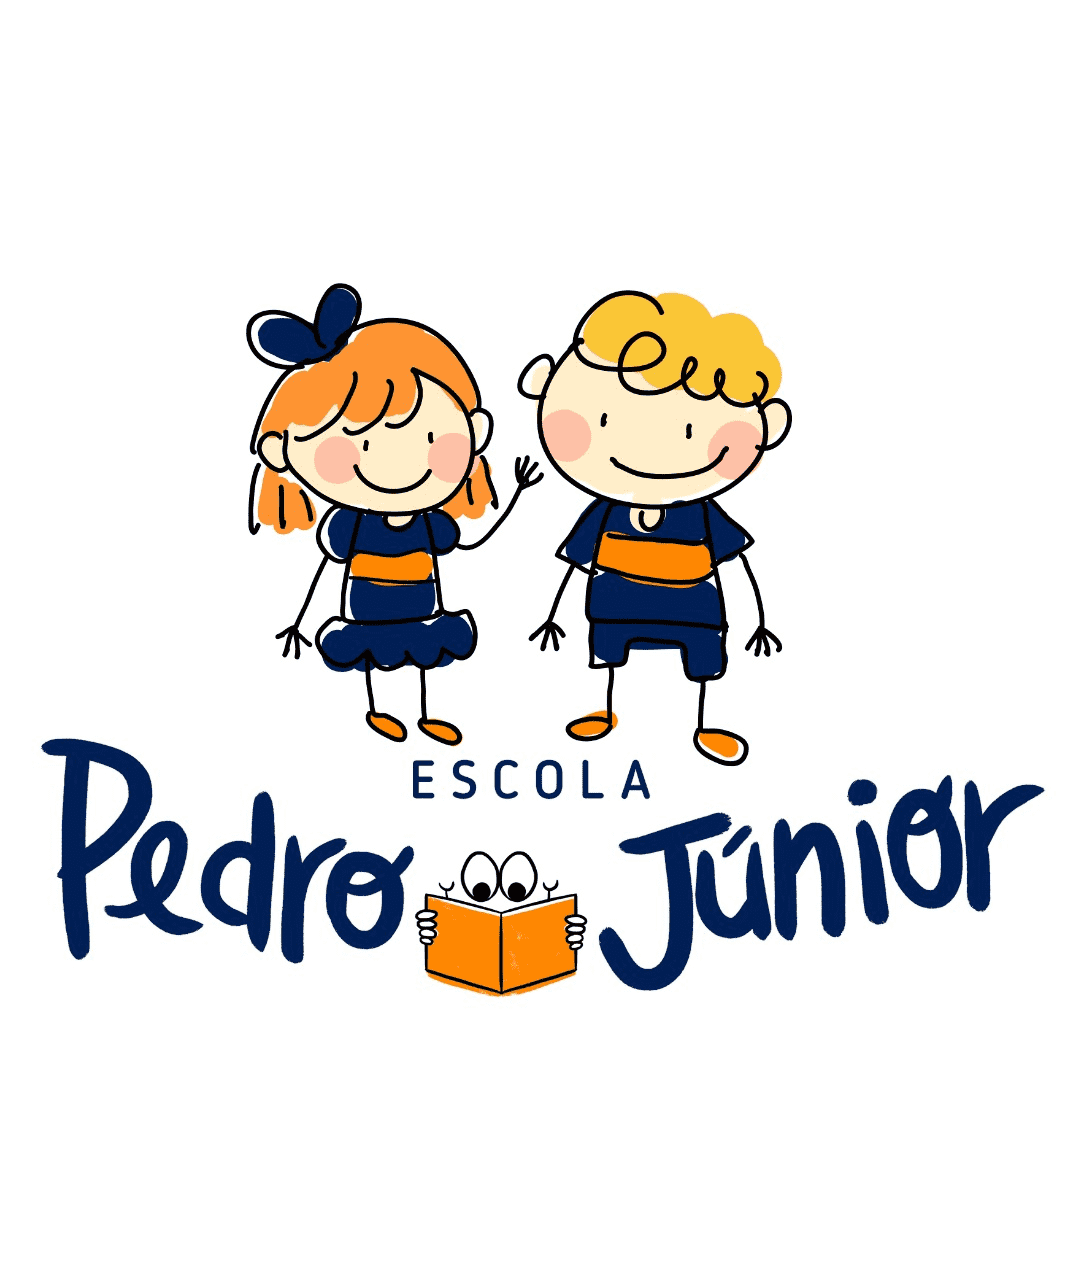  Escola Pedro Junior 